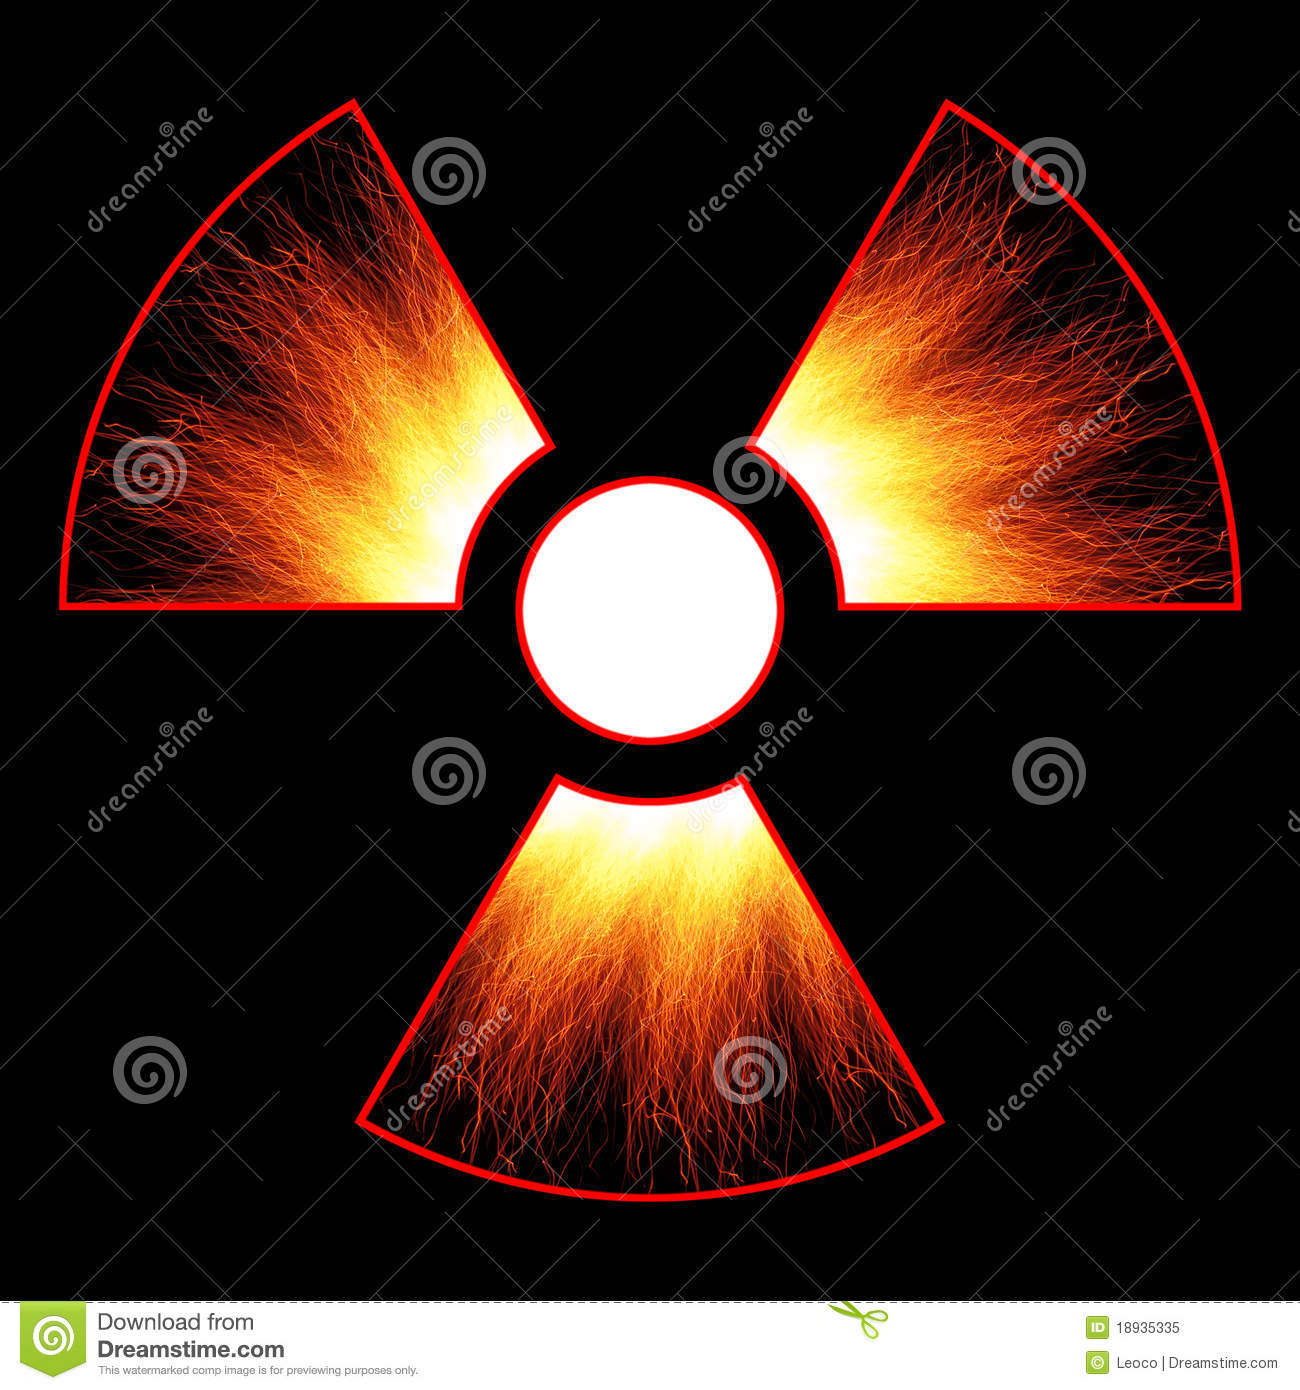 Radiation Danger Sign And Sparks On A Black Background